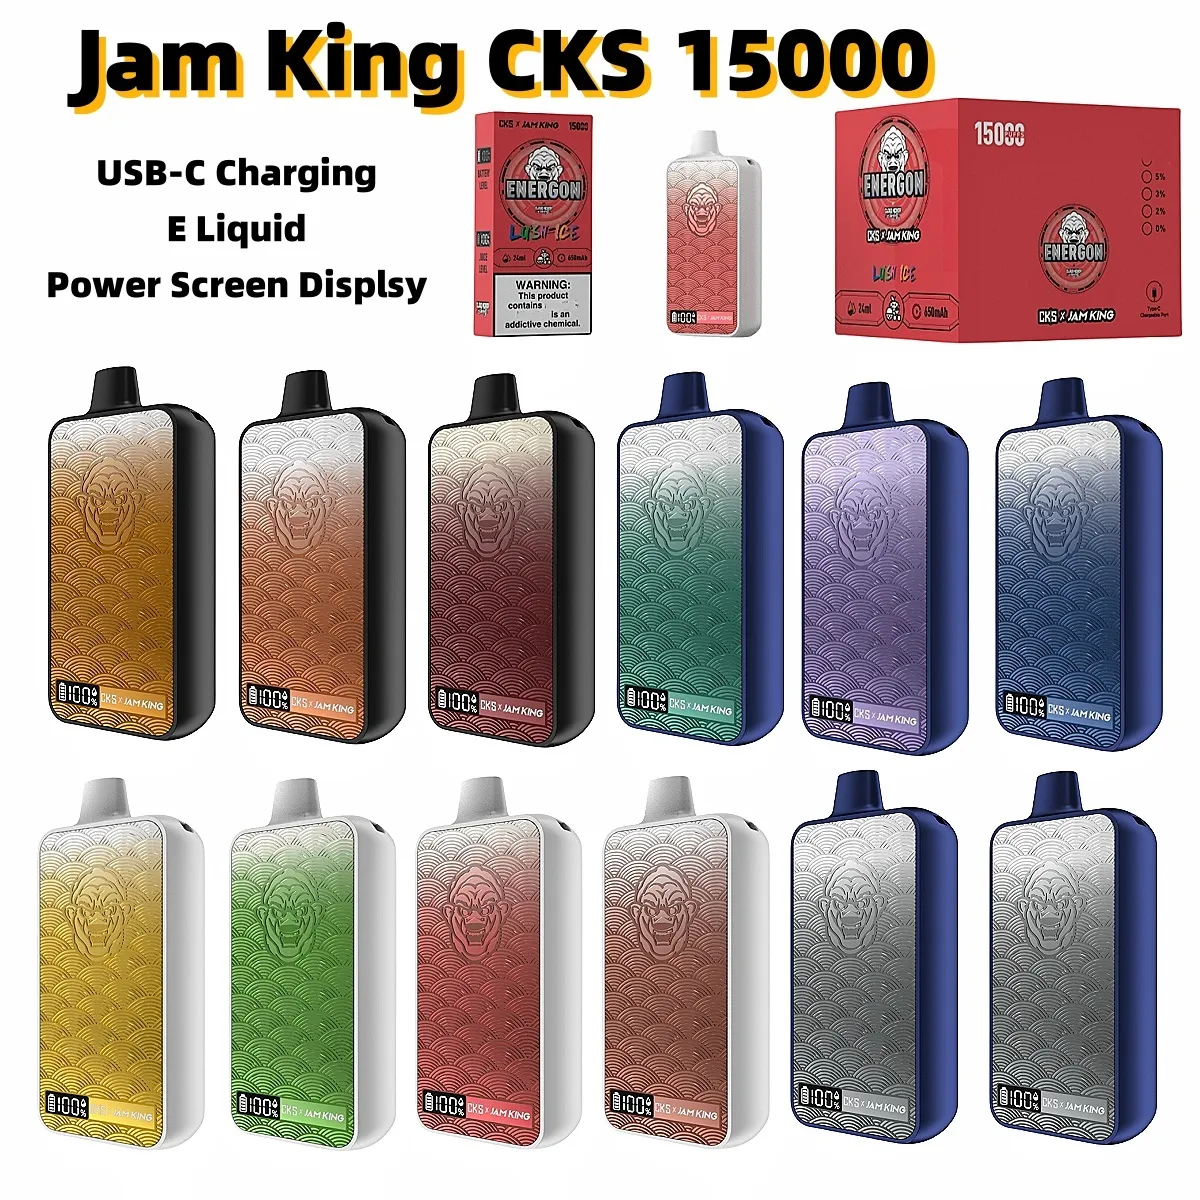 Wegwerp vape Jam King vapers CKS bladerdeeg 15000 Elektronische sigaret CKS ENERGON vape 15000 24 ml E Liquid Power Schermweergave USB-C Opladen 650 mah Batterijpen